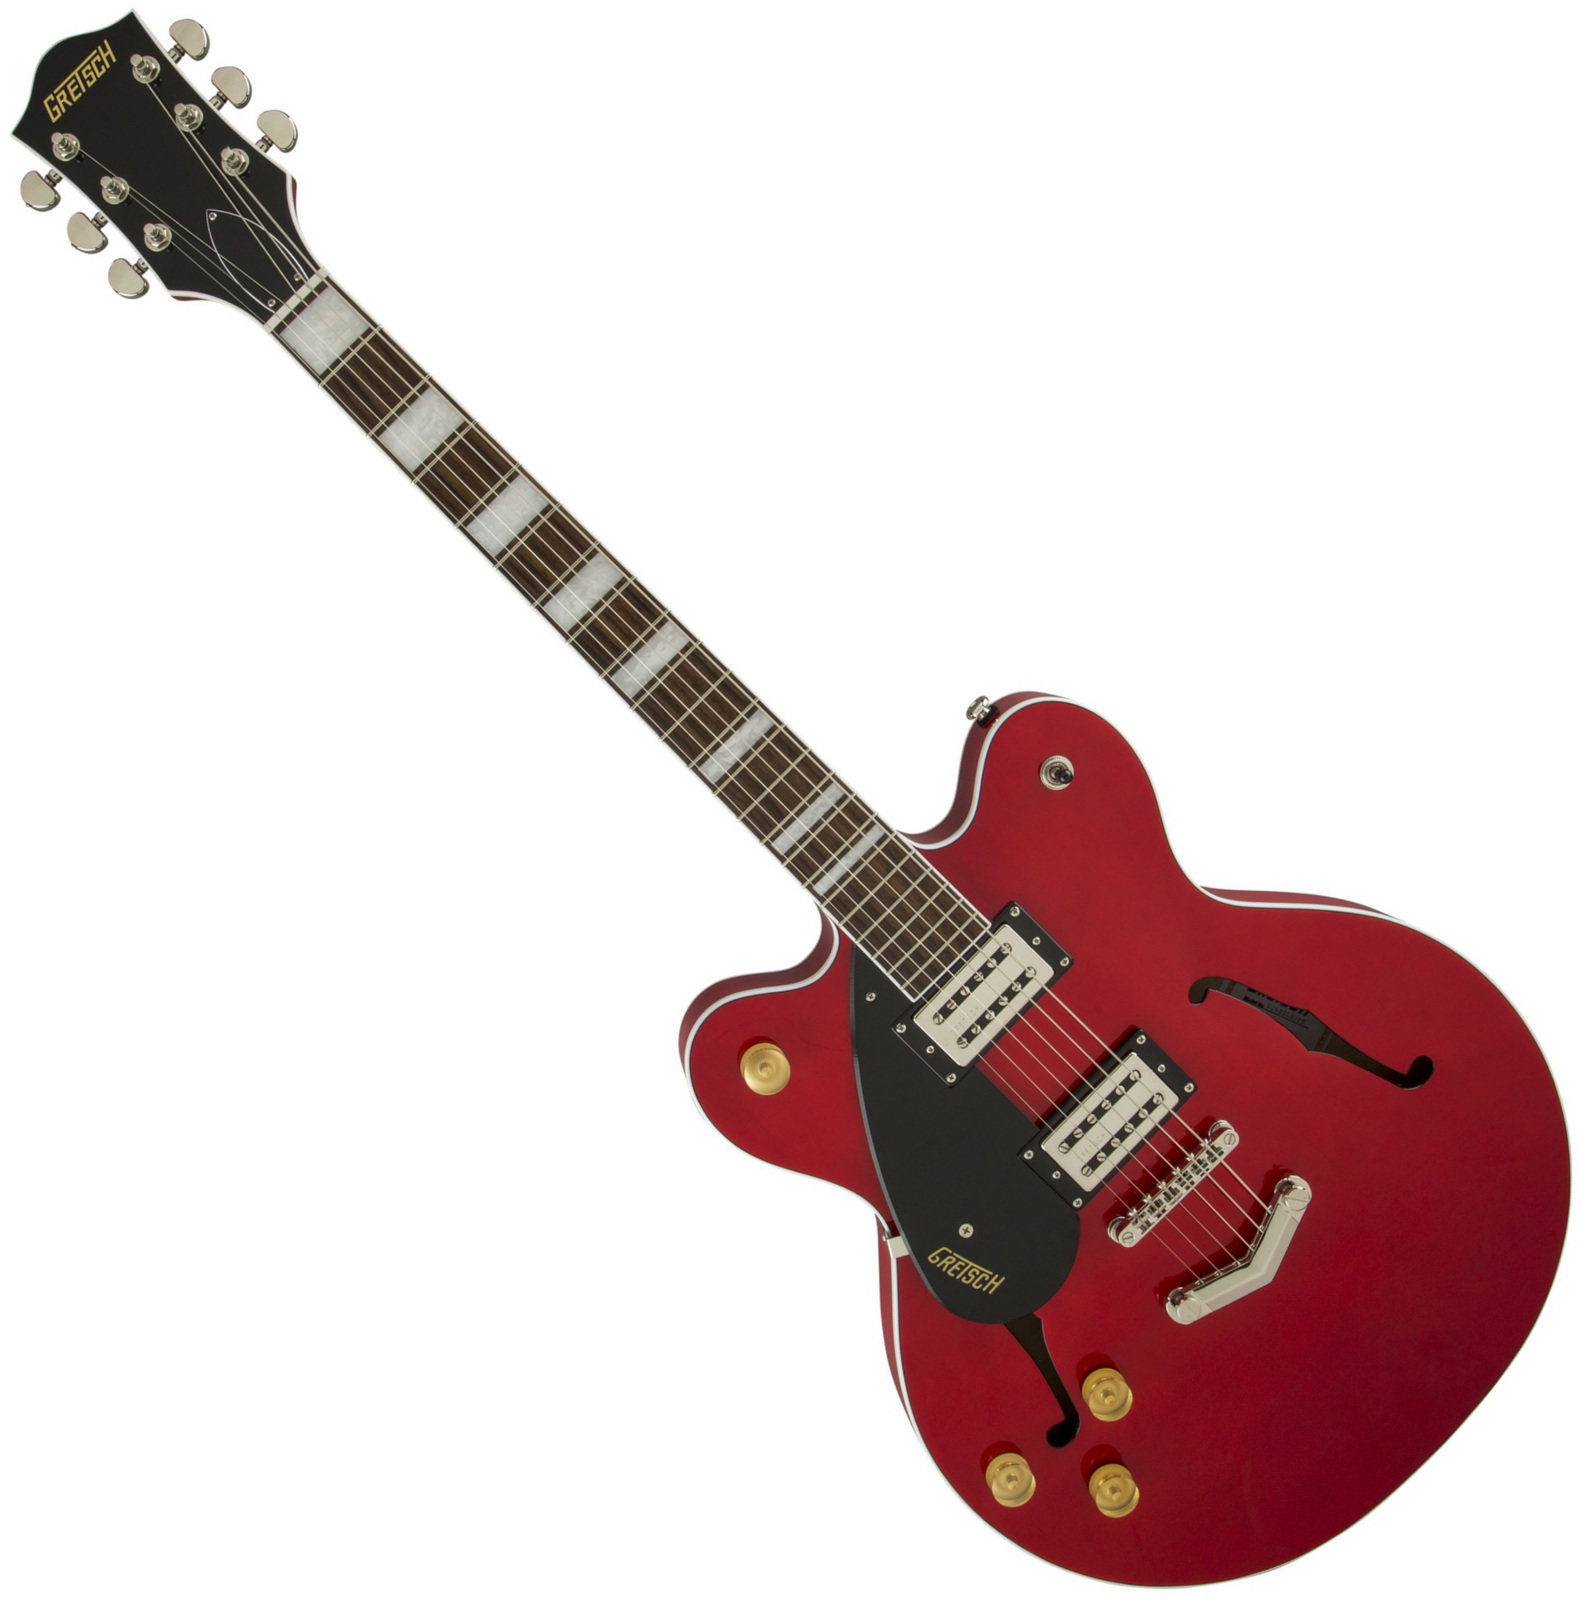 Elektrische gitaar voor linkshandige speler Gretsch G2622LH Streamliner Center-Block Double Cutaway Left-Hand, Flagstaff Sunset